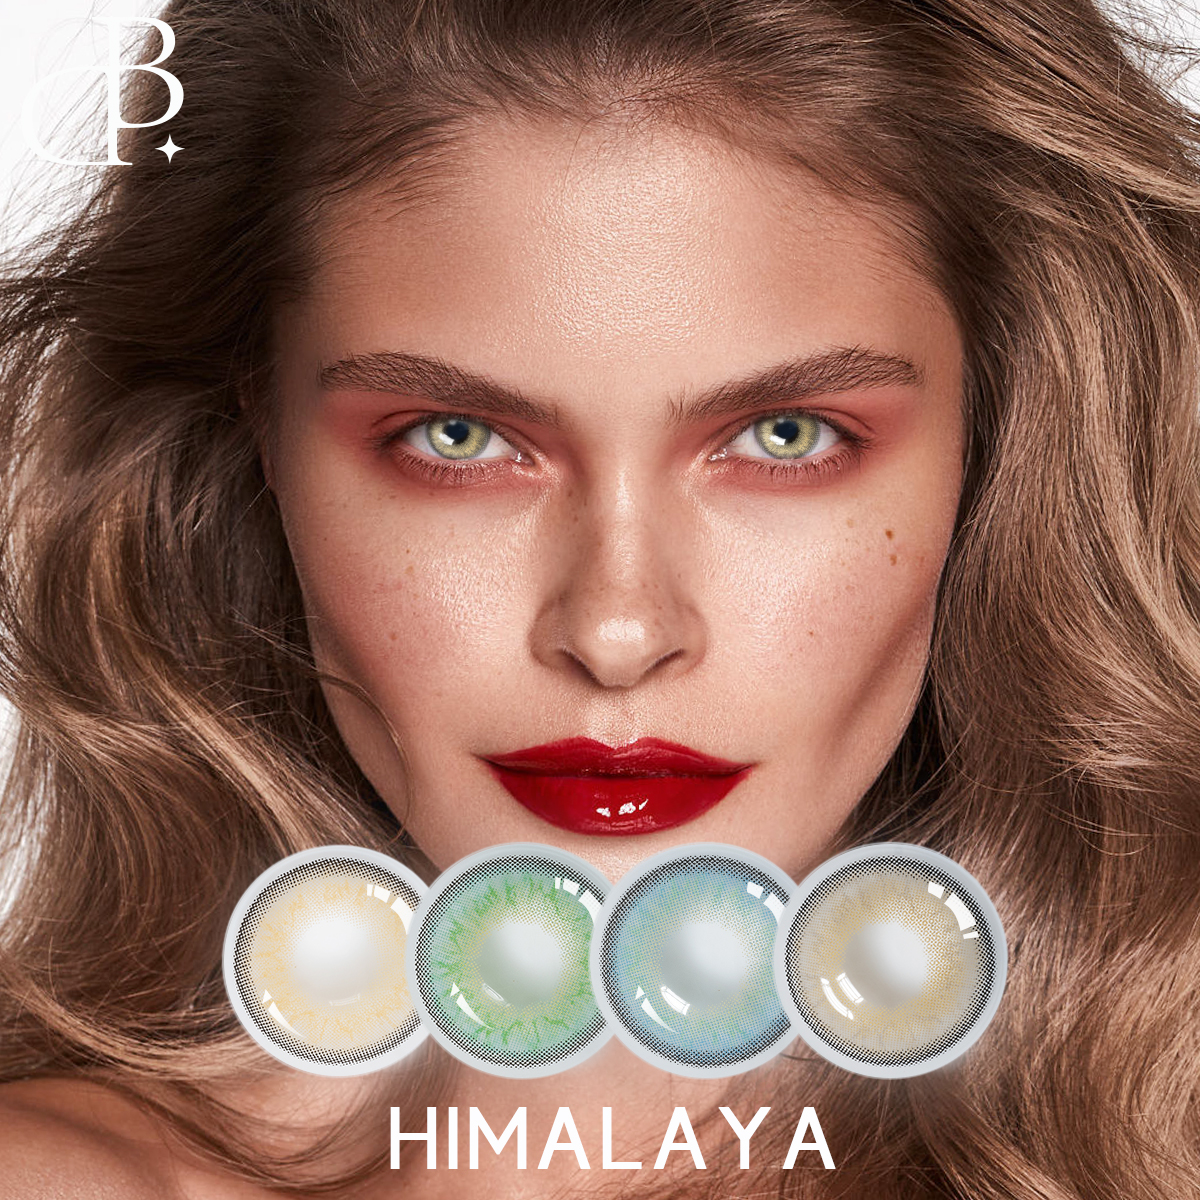 HIMALAYA Soft Natural Lens OEM/ODM dbeyes Marke Großhandel grau-blaue Augenkontaktlinsen Farbkontaktlinsen